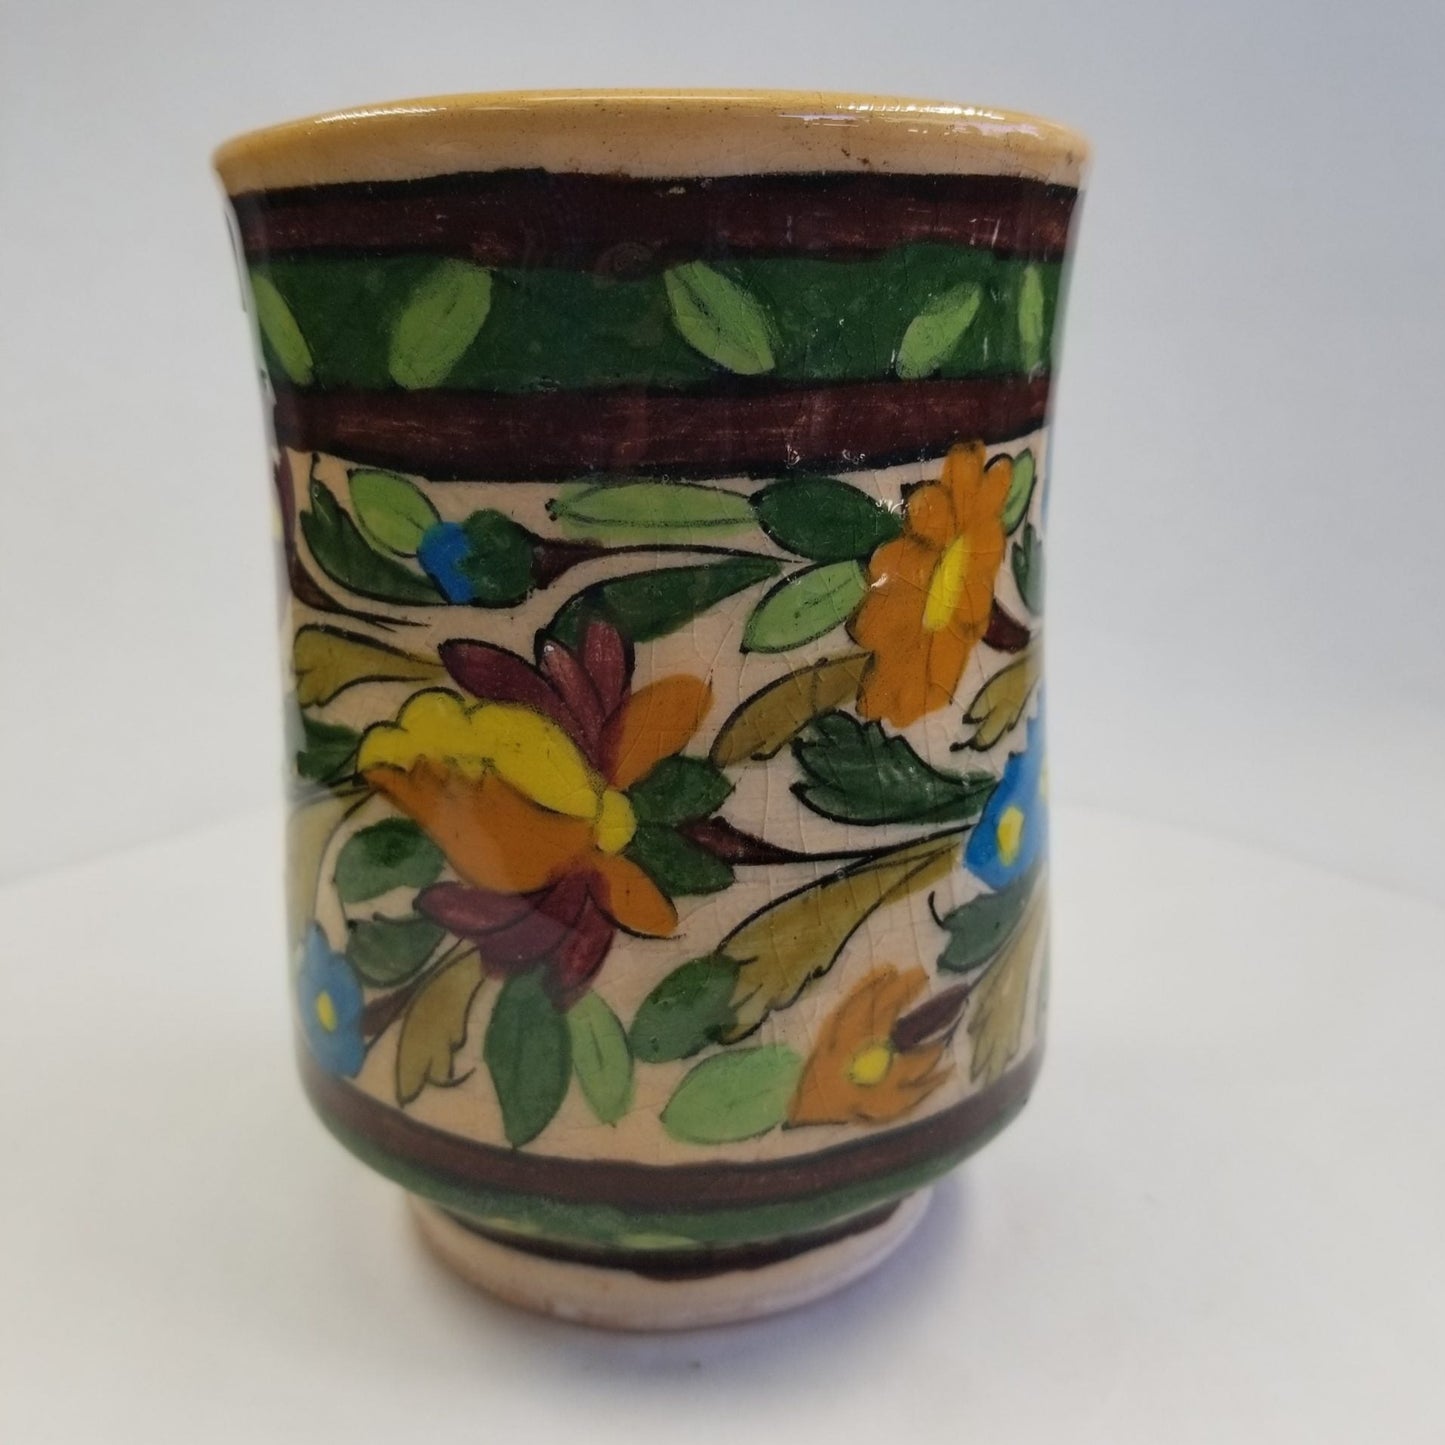 Glazed Colorful Mug Vase - HighTouch 